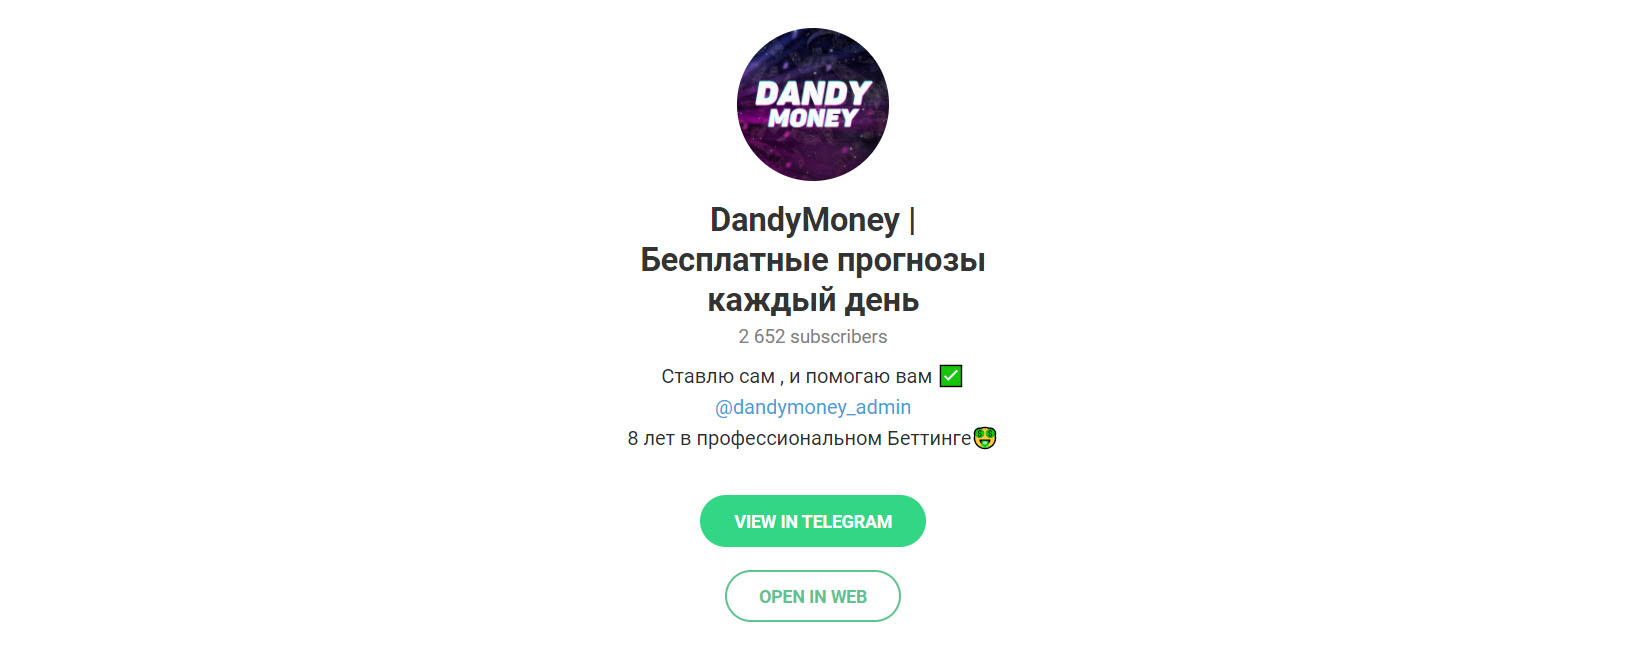 Внешний вид телеграм канала DandyMoney